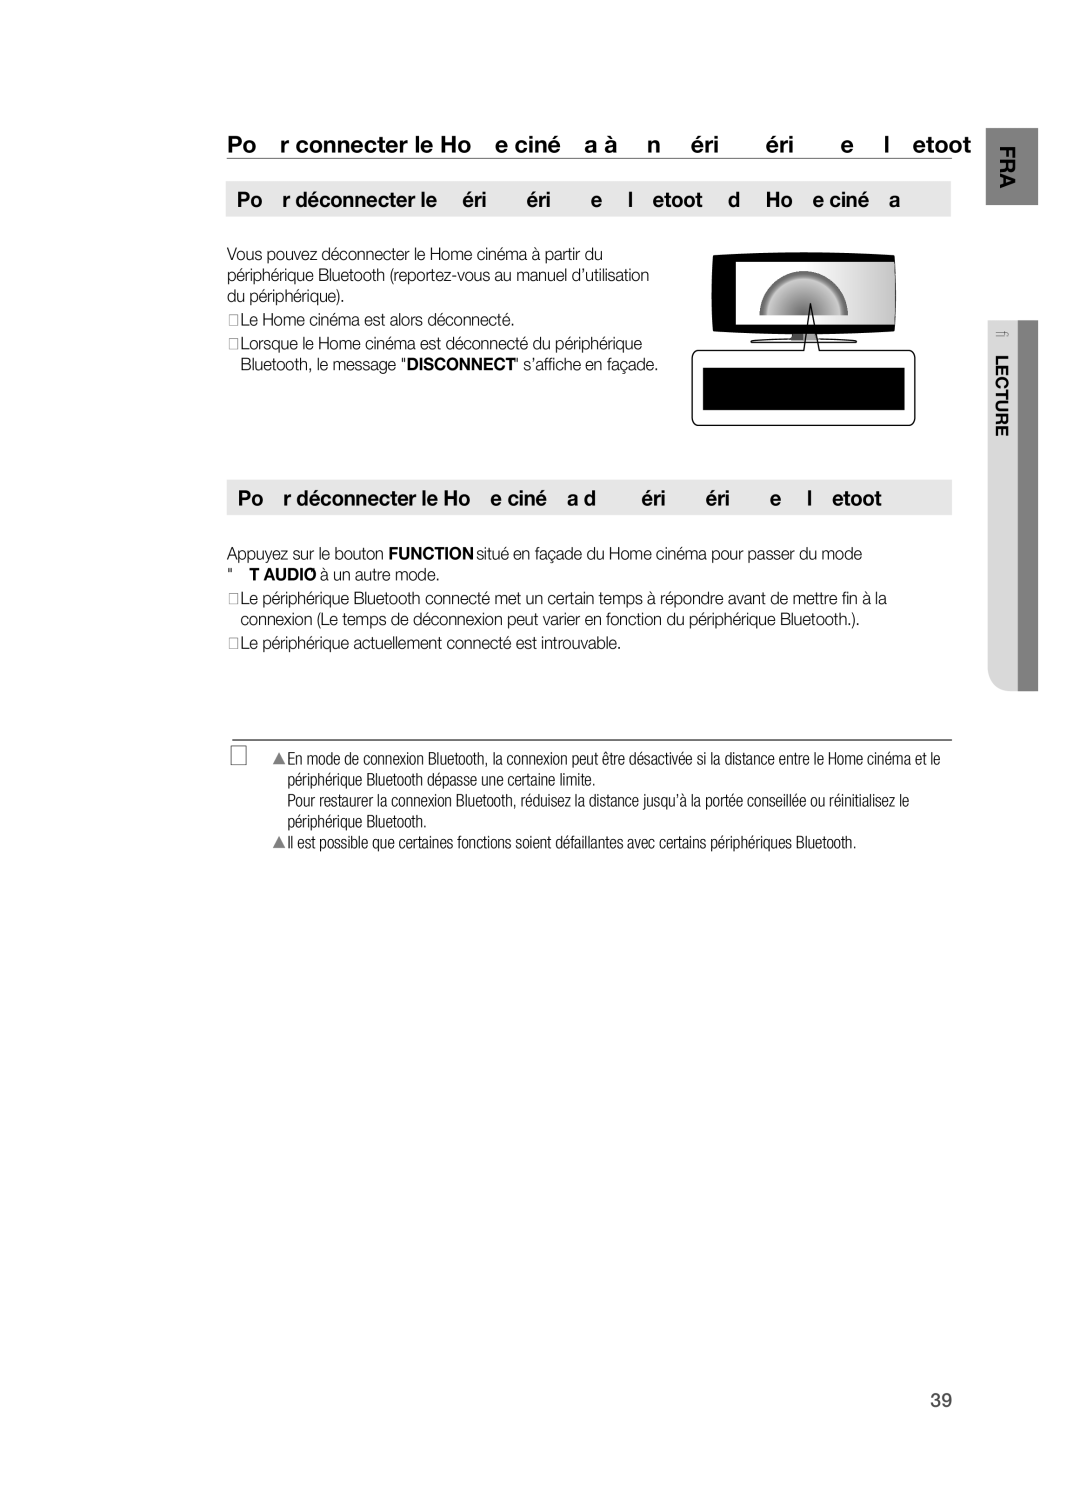 Samsung HT-X622T/XEF manual Pour déconnecter le périphérique Bluetooth du Home cinéma, Lecture 